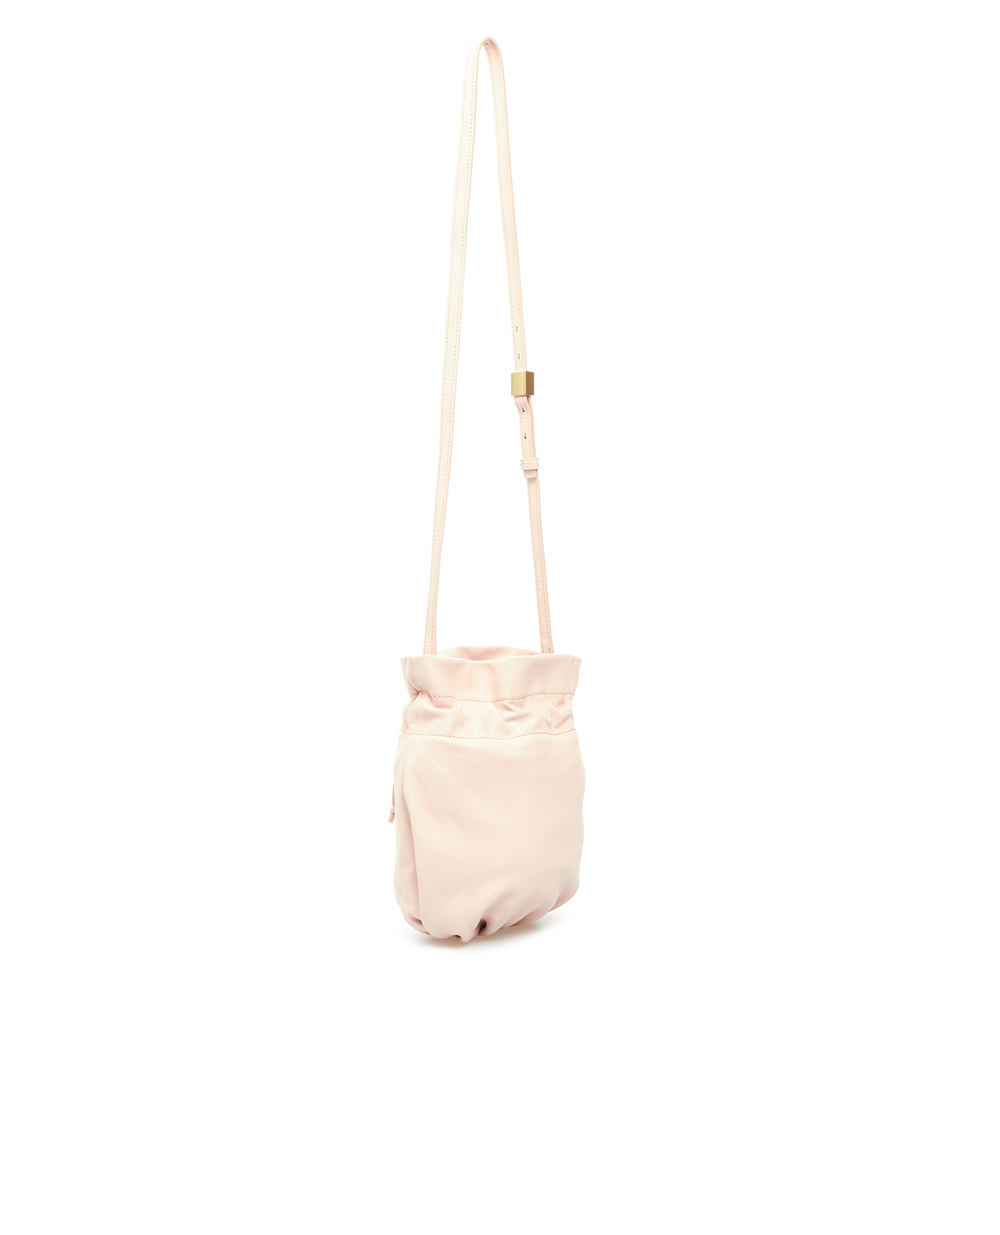 Кожаная сумка Polo Ralph Lauren 428856969005, розовый цвет • Купить в интернет-магазине Kameron